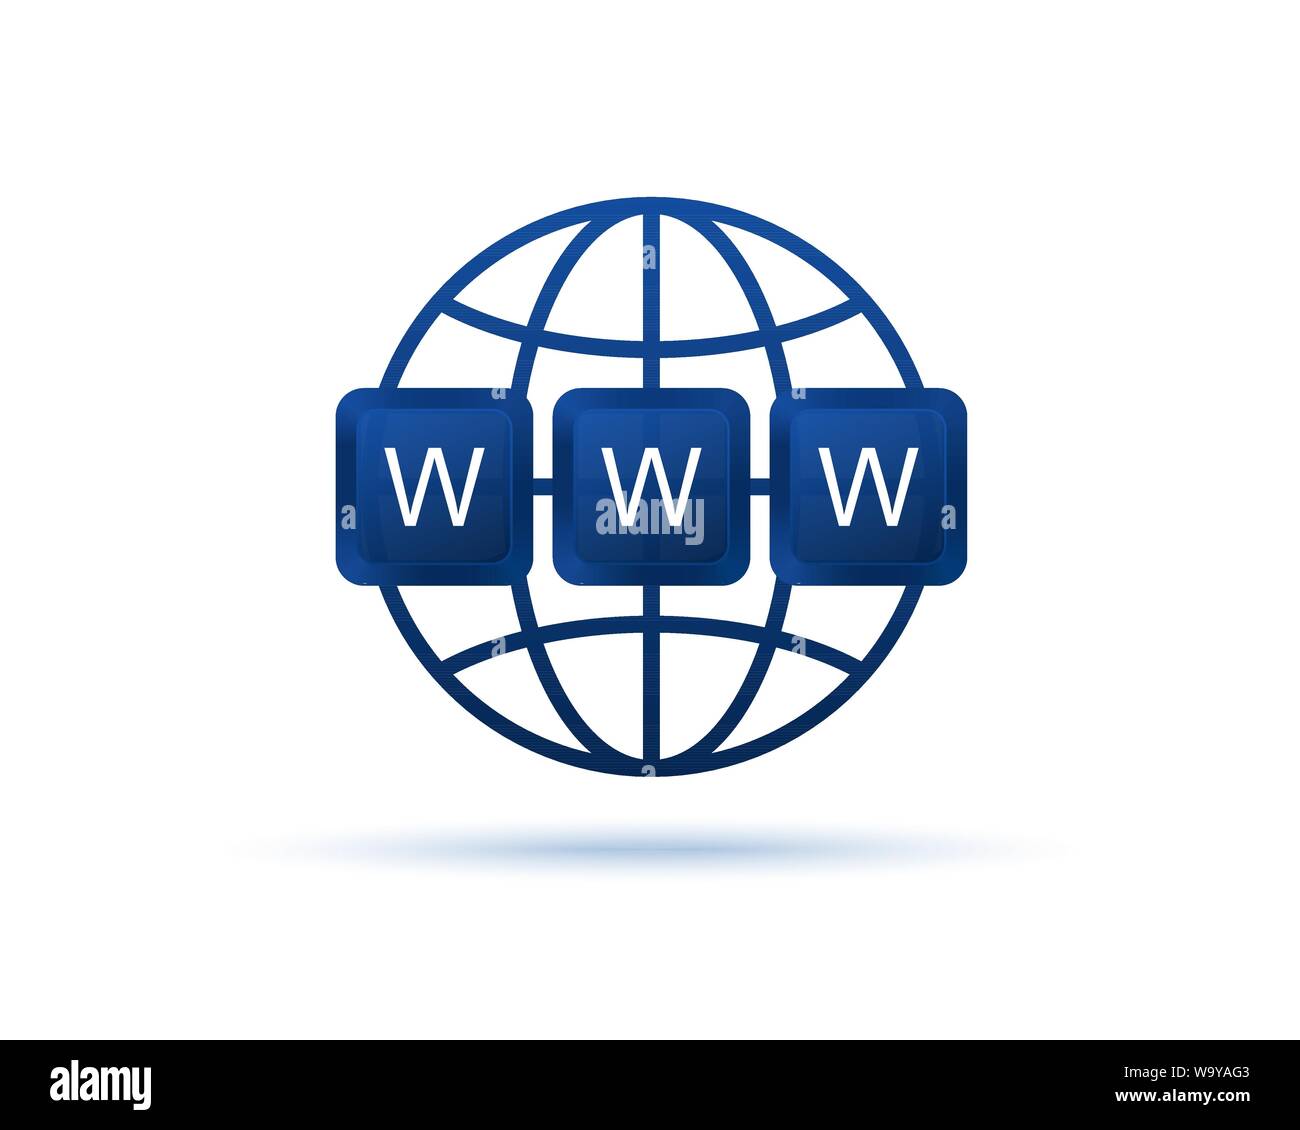 L'icône WWW. World Wide Web. Symbole du site Web. Les touches du clavier de l'ordinateur. Globe avec texte www. Site Internet concept. Illustration vecteur eps 10 Illustration de Vecteur